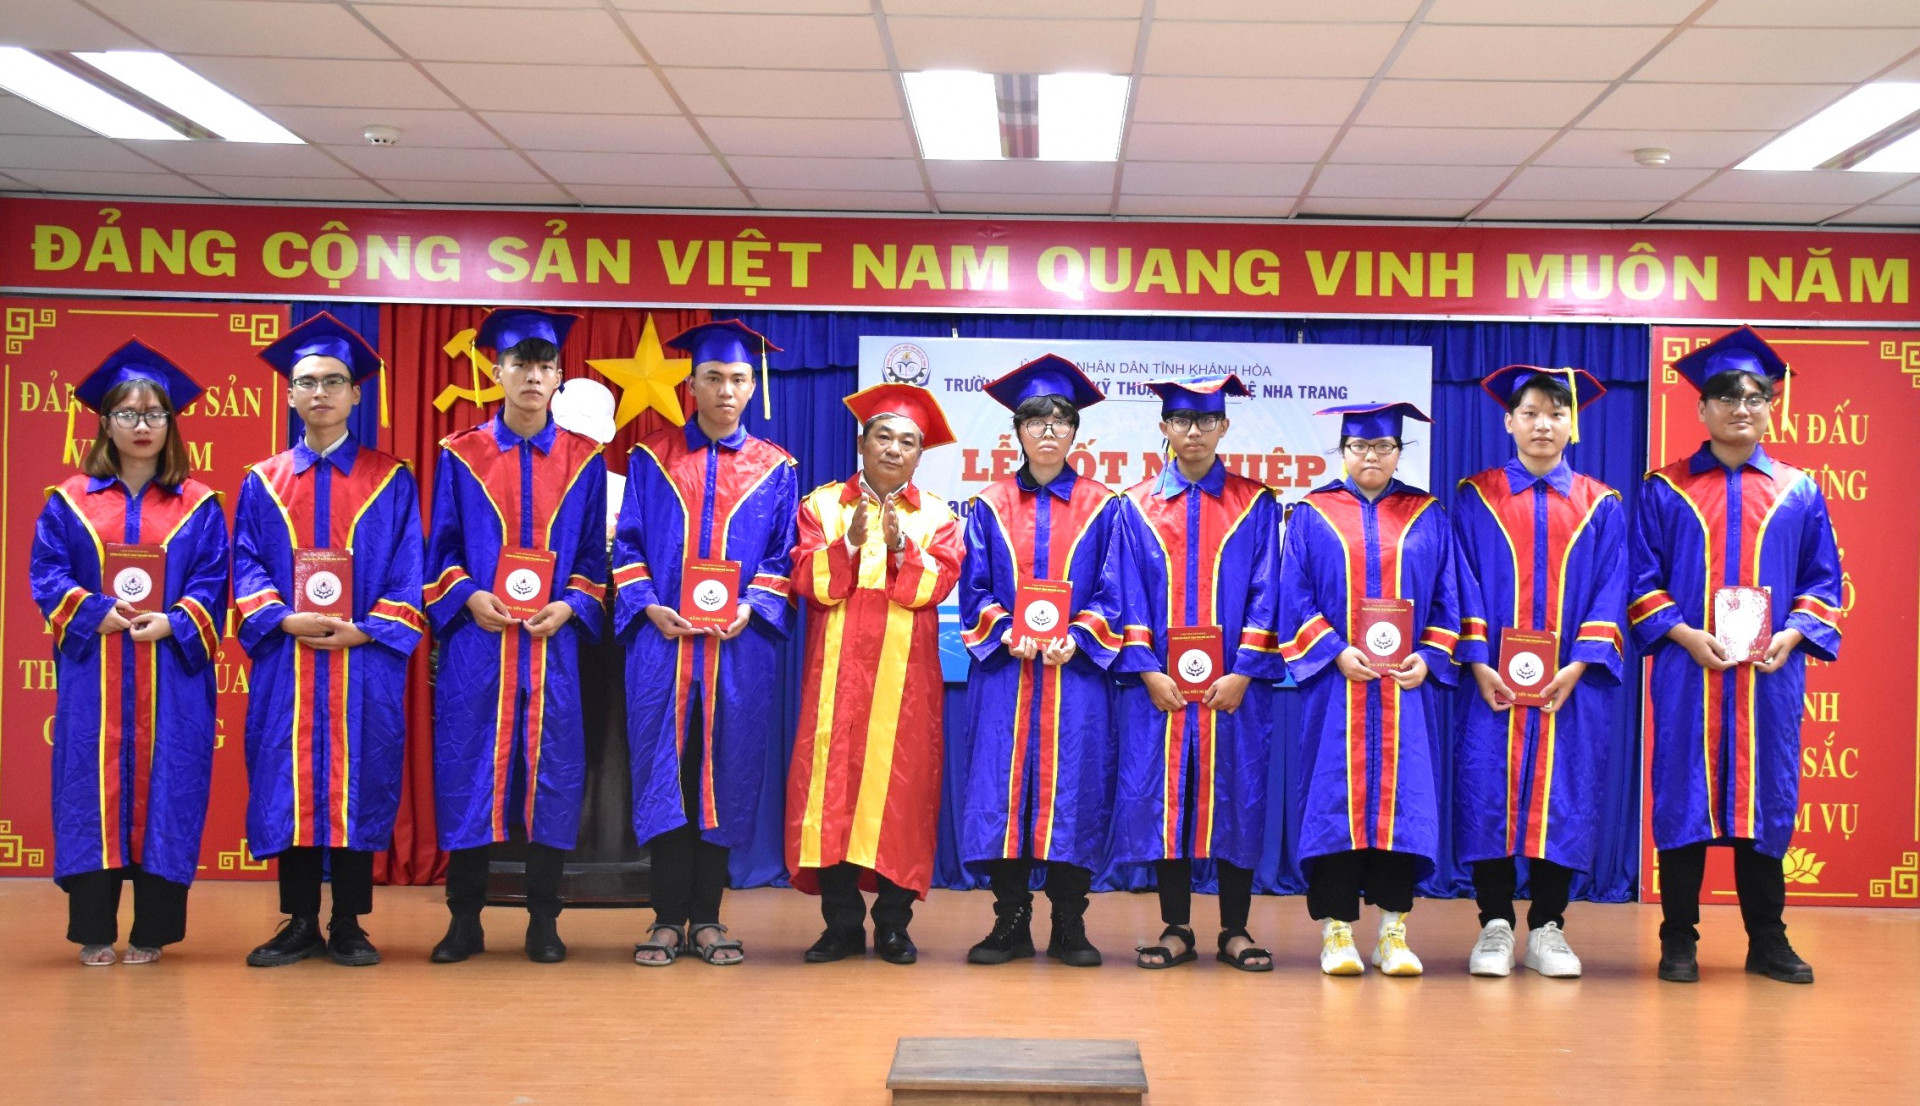 Ông Nguyễn Văn Lực - Hiệu trưởng Trường Cao đẳng Kỹ thuật Công nghệ Nha Trang trao bằng tốt nghiệp cho sinh viên.